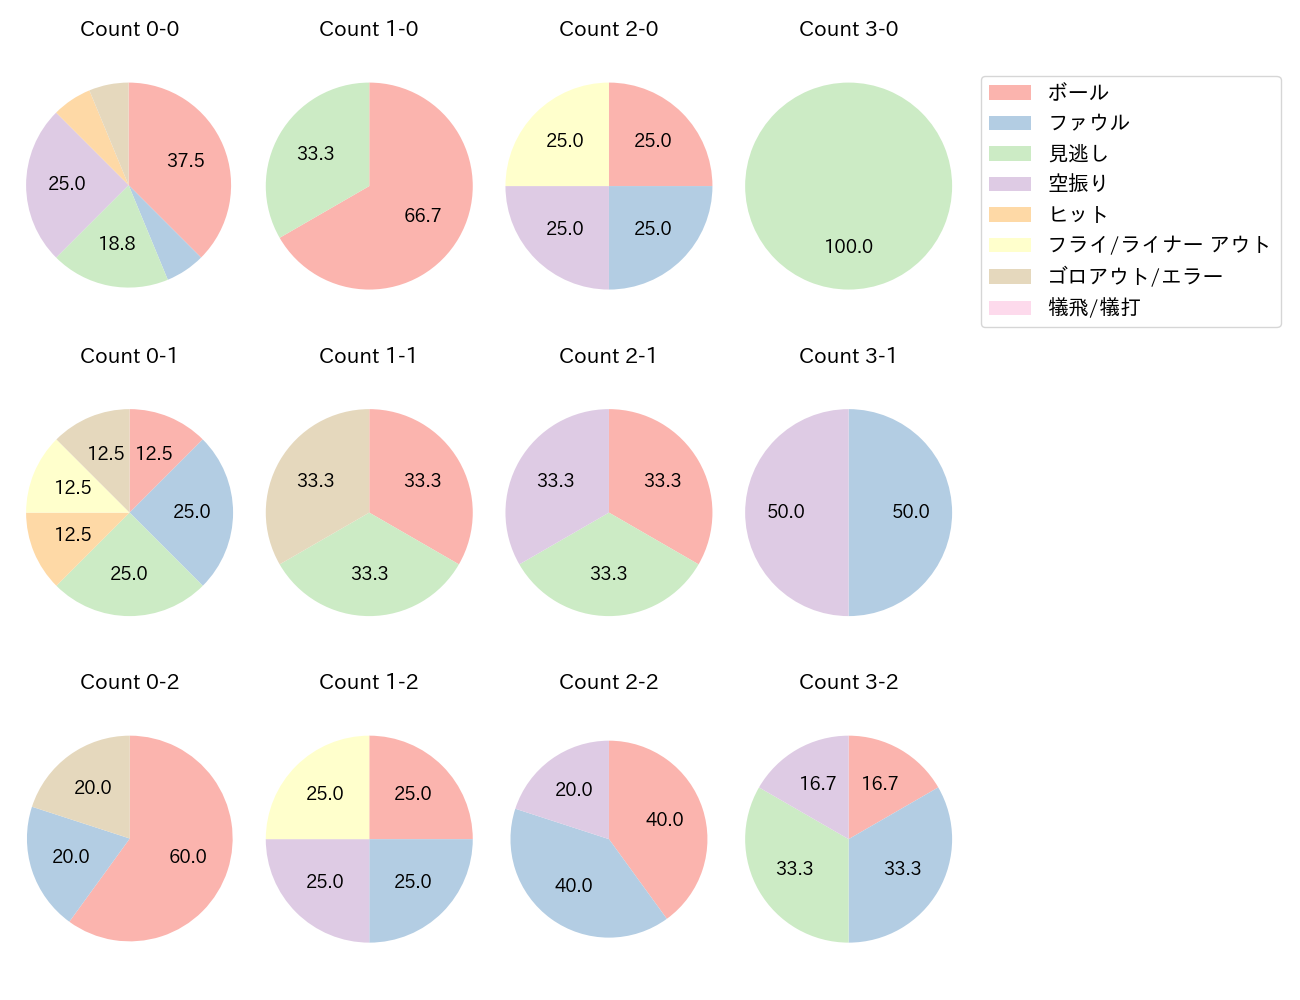 陽川 尚将の球数分布(2021年5月)